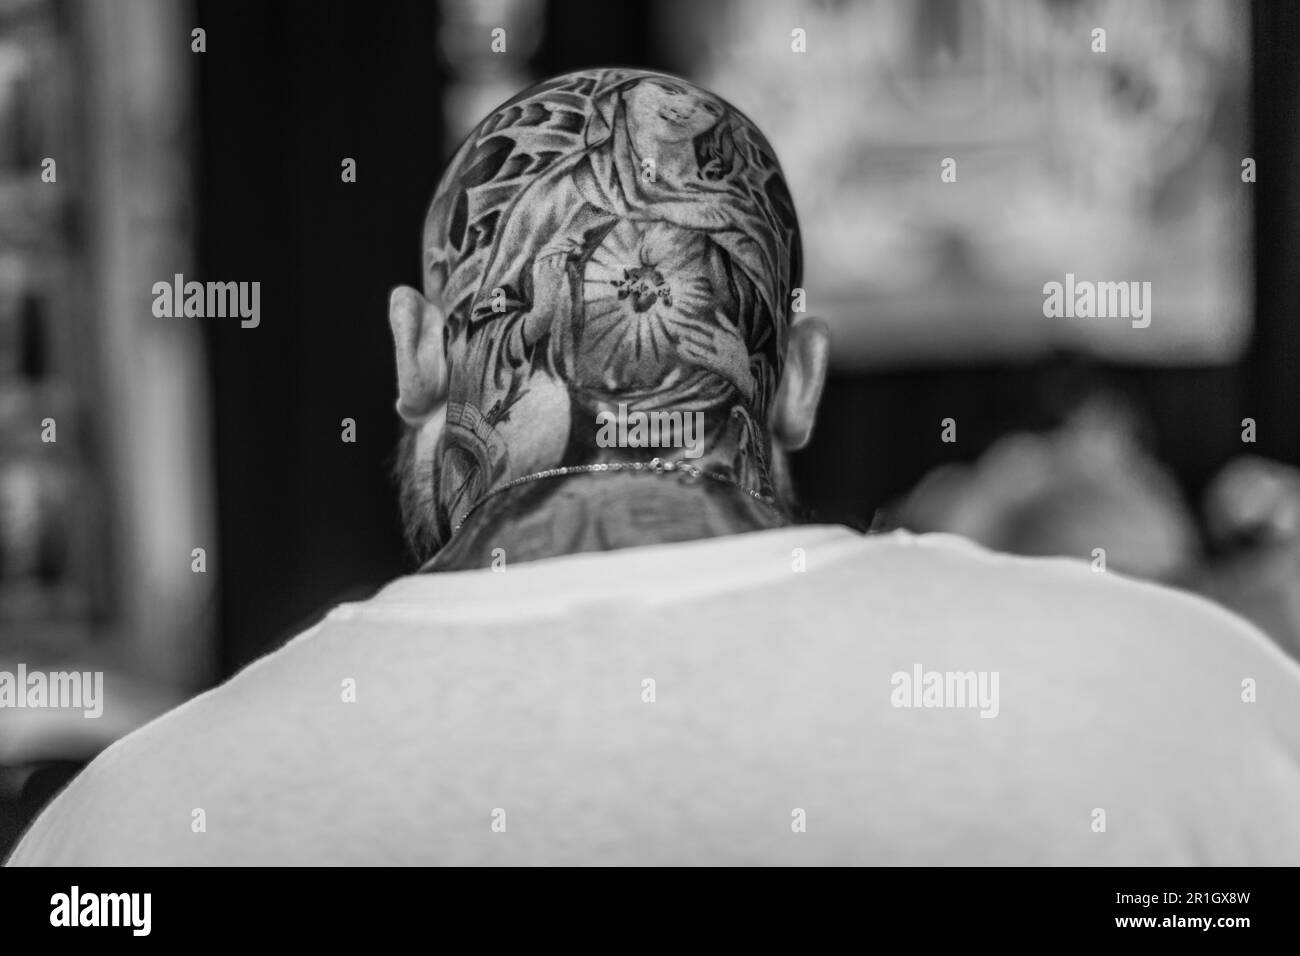 Image en noir et blanc d'une vue arrière d'un homme chauve avec un tatouage sur son crâne. Banque D'Images